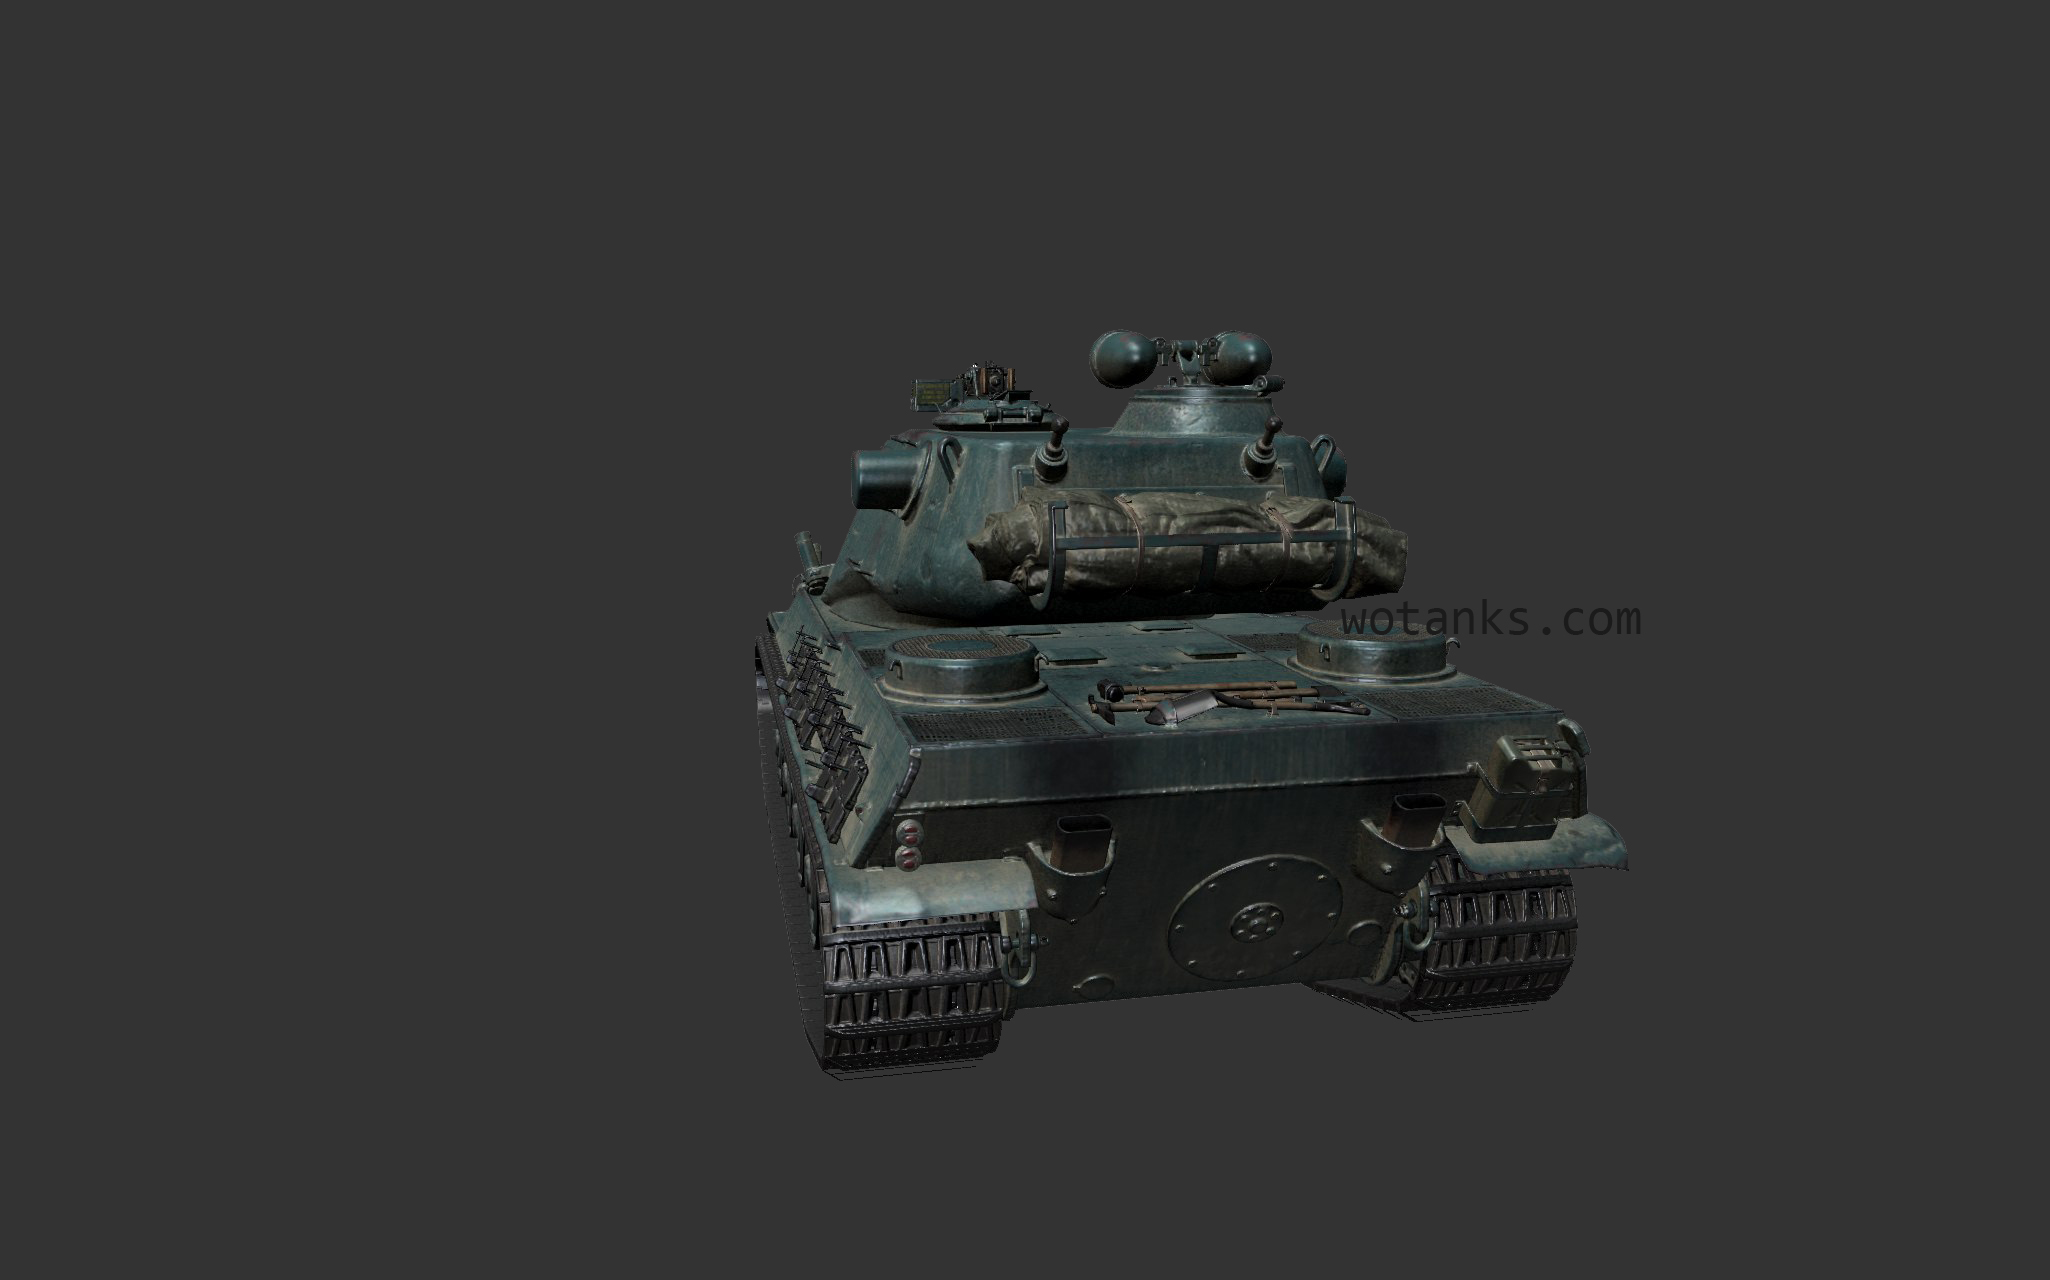 AMX M4 mle. 54